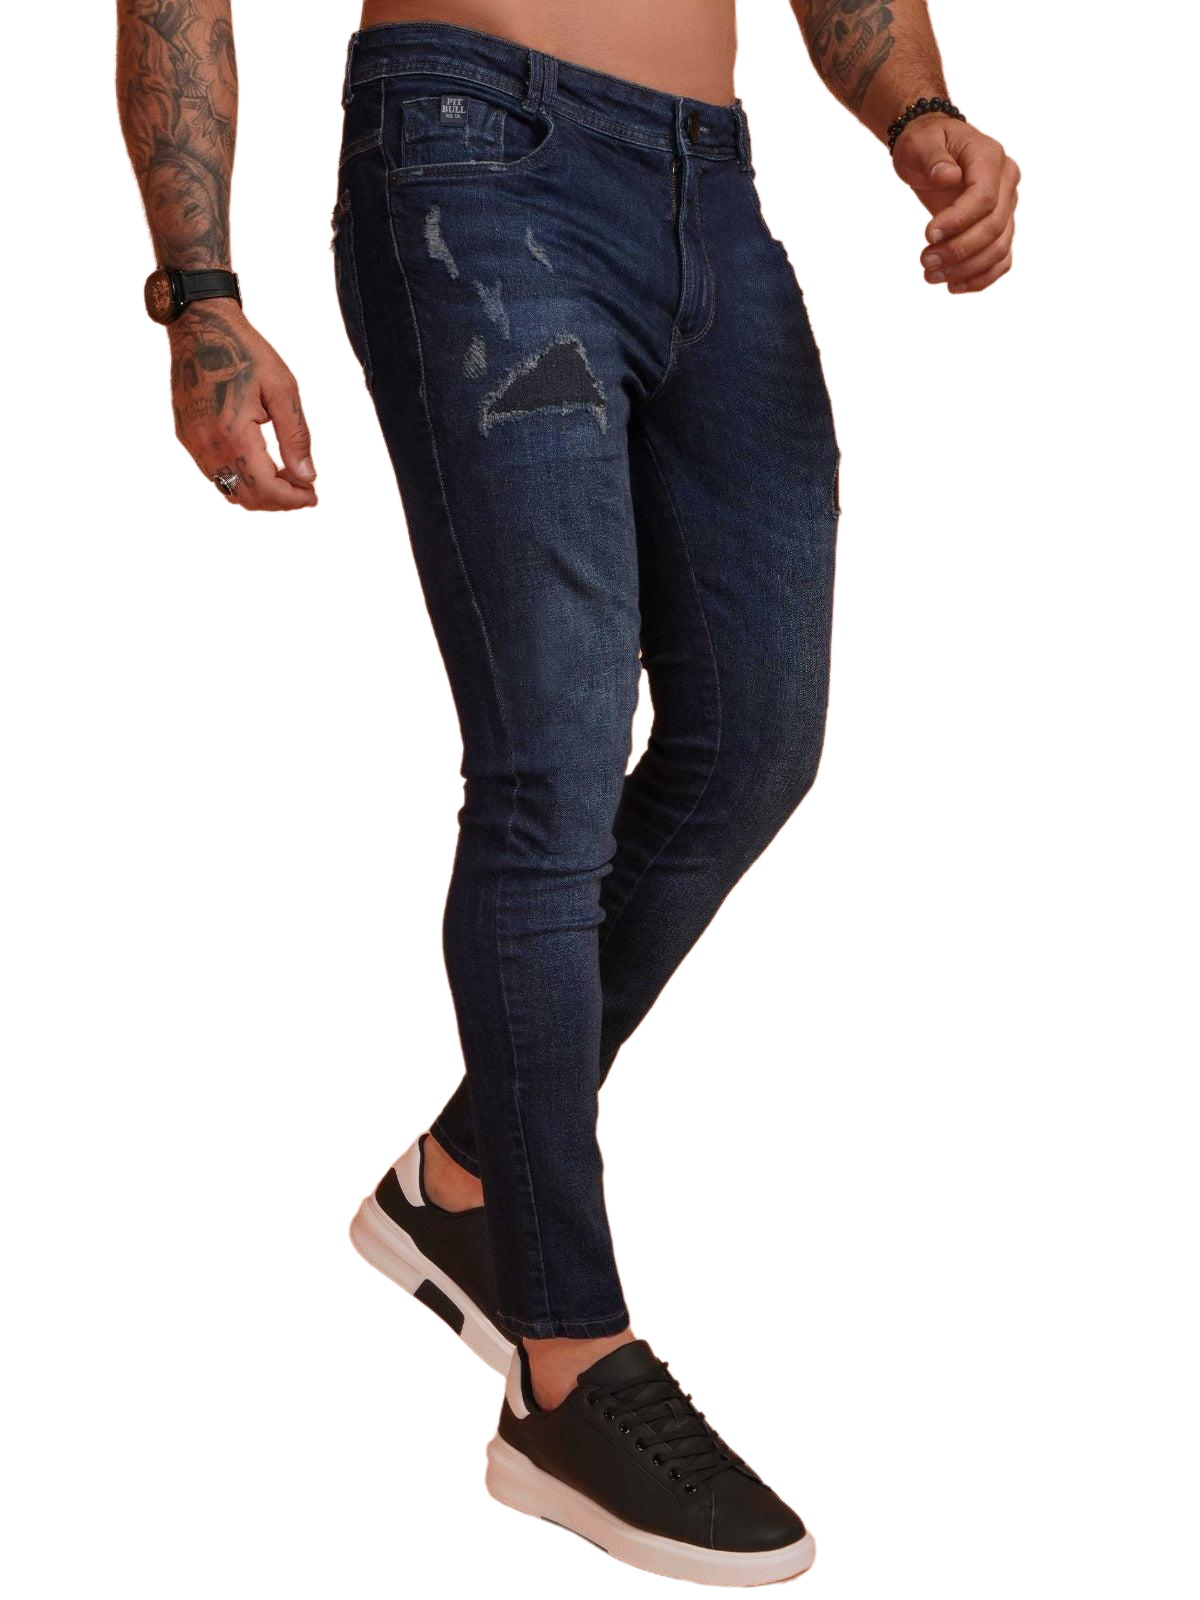 Pit Bull Jeans men's Jeans Pants 79981